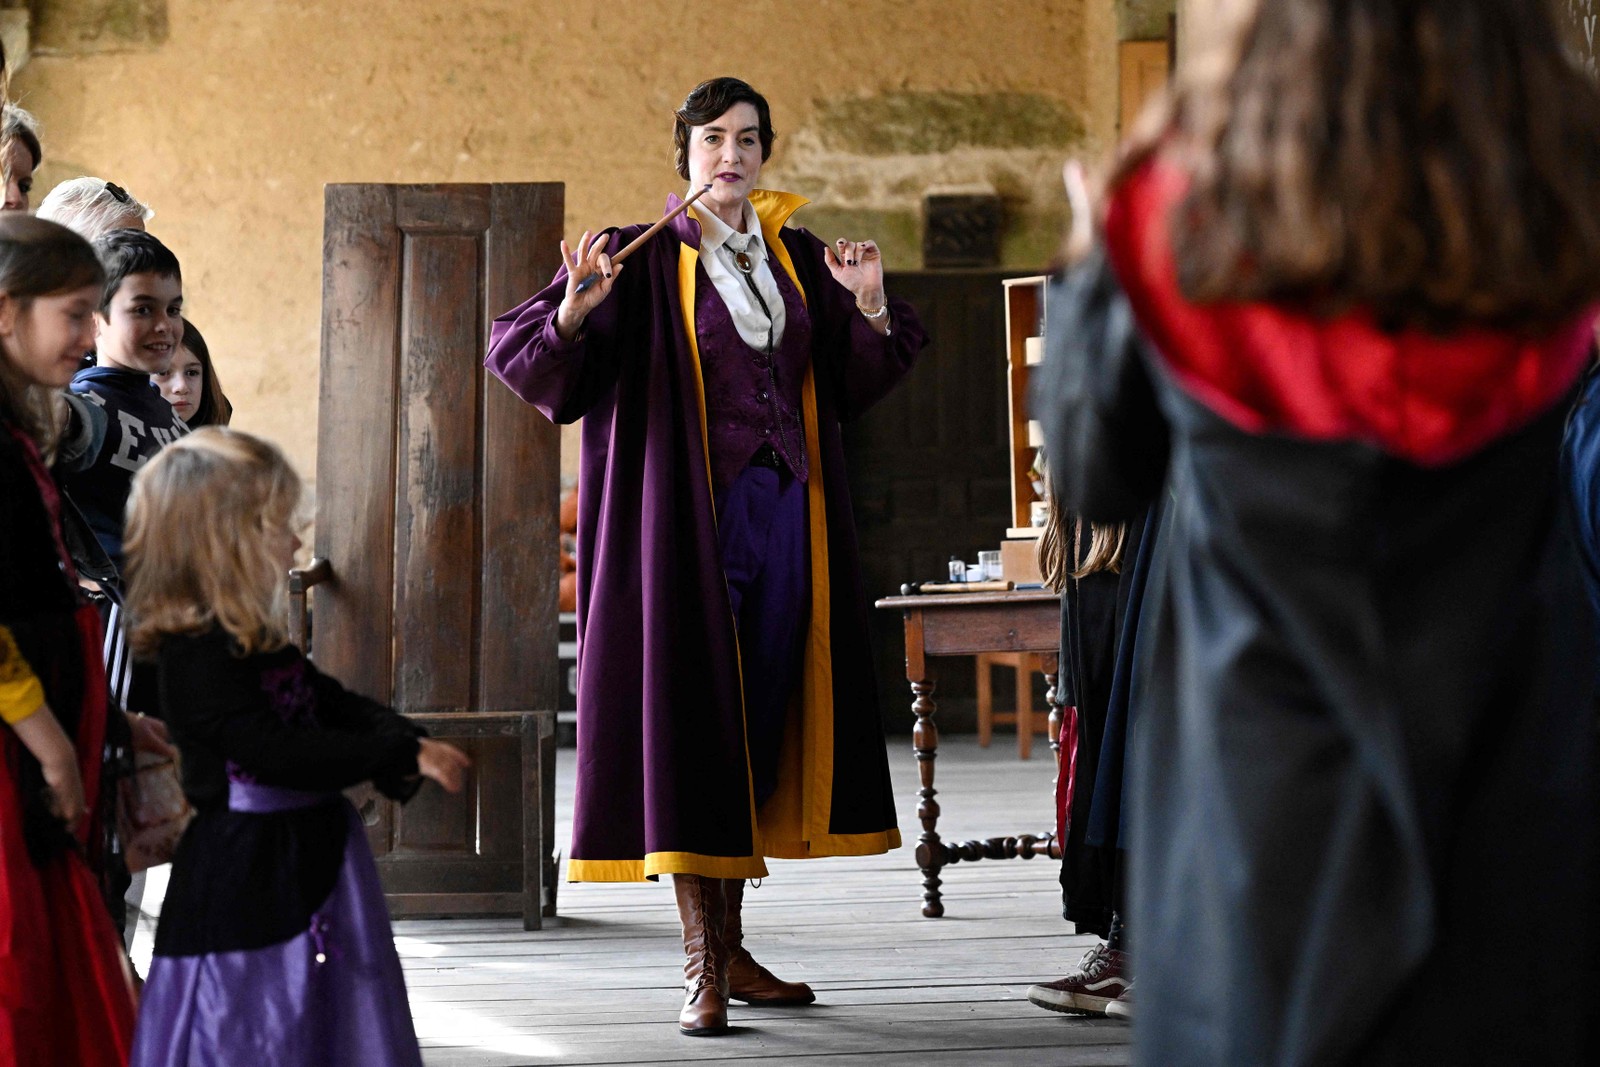 Pequenos visitantes observam um ator que interpreta um professor na "escola de bruxaria" montada no Château Le Rocher-Portail, na França — Foto: Damien Meyer/ AFP